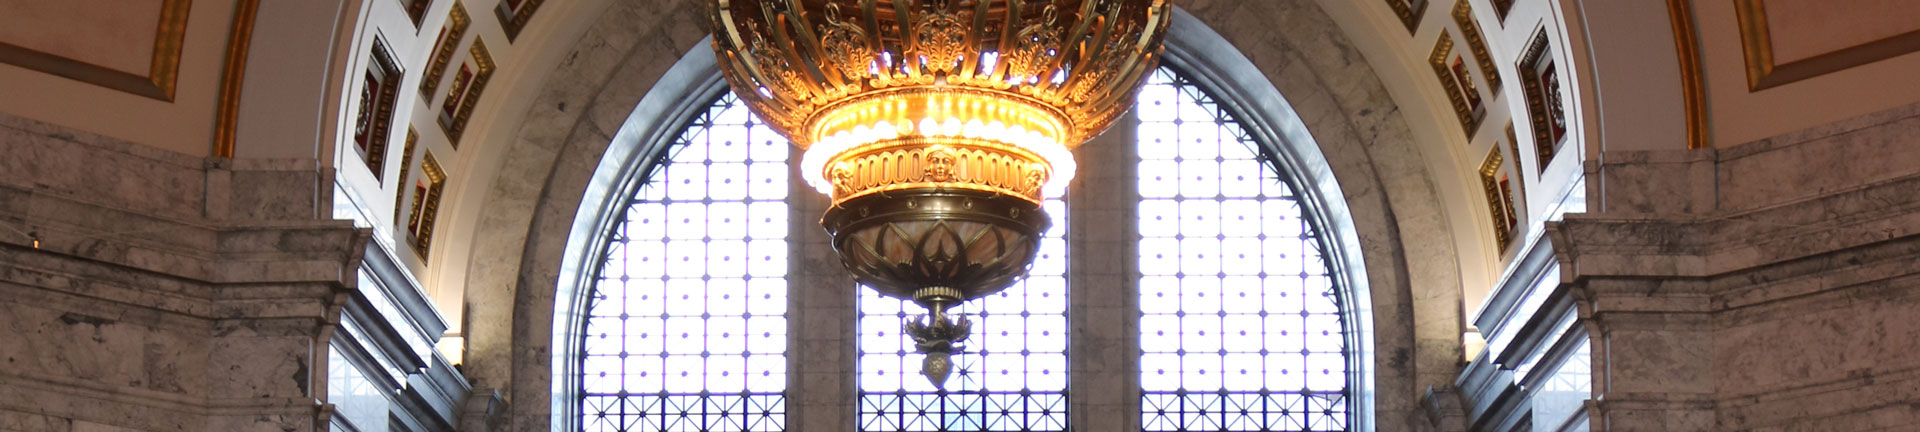 header capitol chandelier